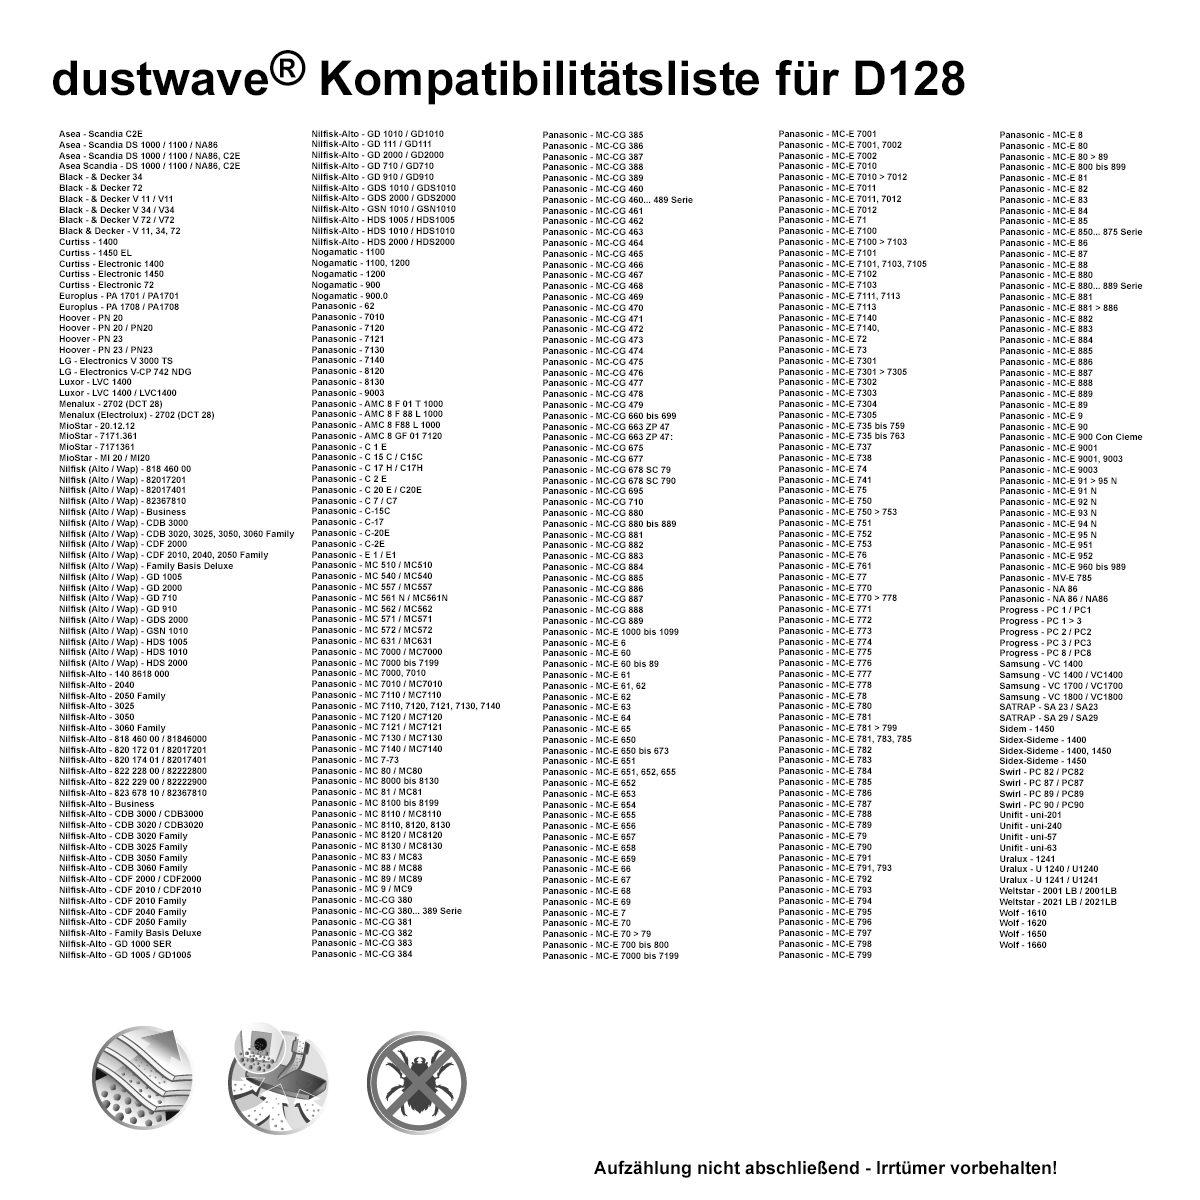 Dustwave® 10 Staubsaugerbeutel für Black &amp; Decker V 34 / V34 - hocheffizient, mehrlagiges Mikrovlies mit Hygieneverschluss - Made in Germany